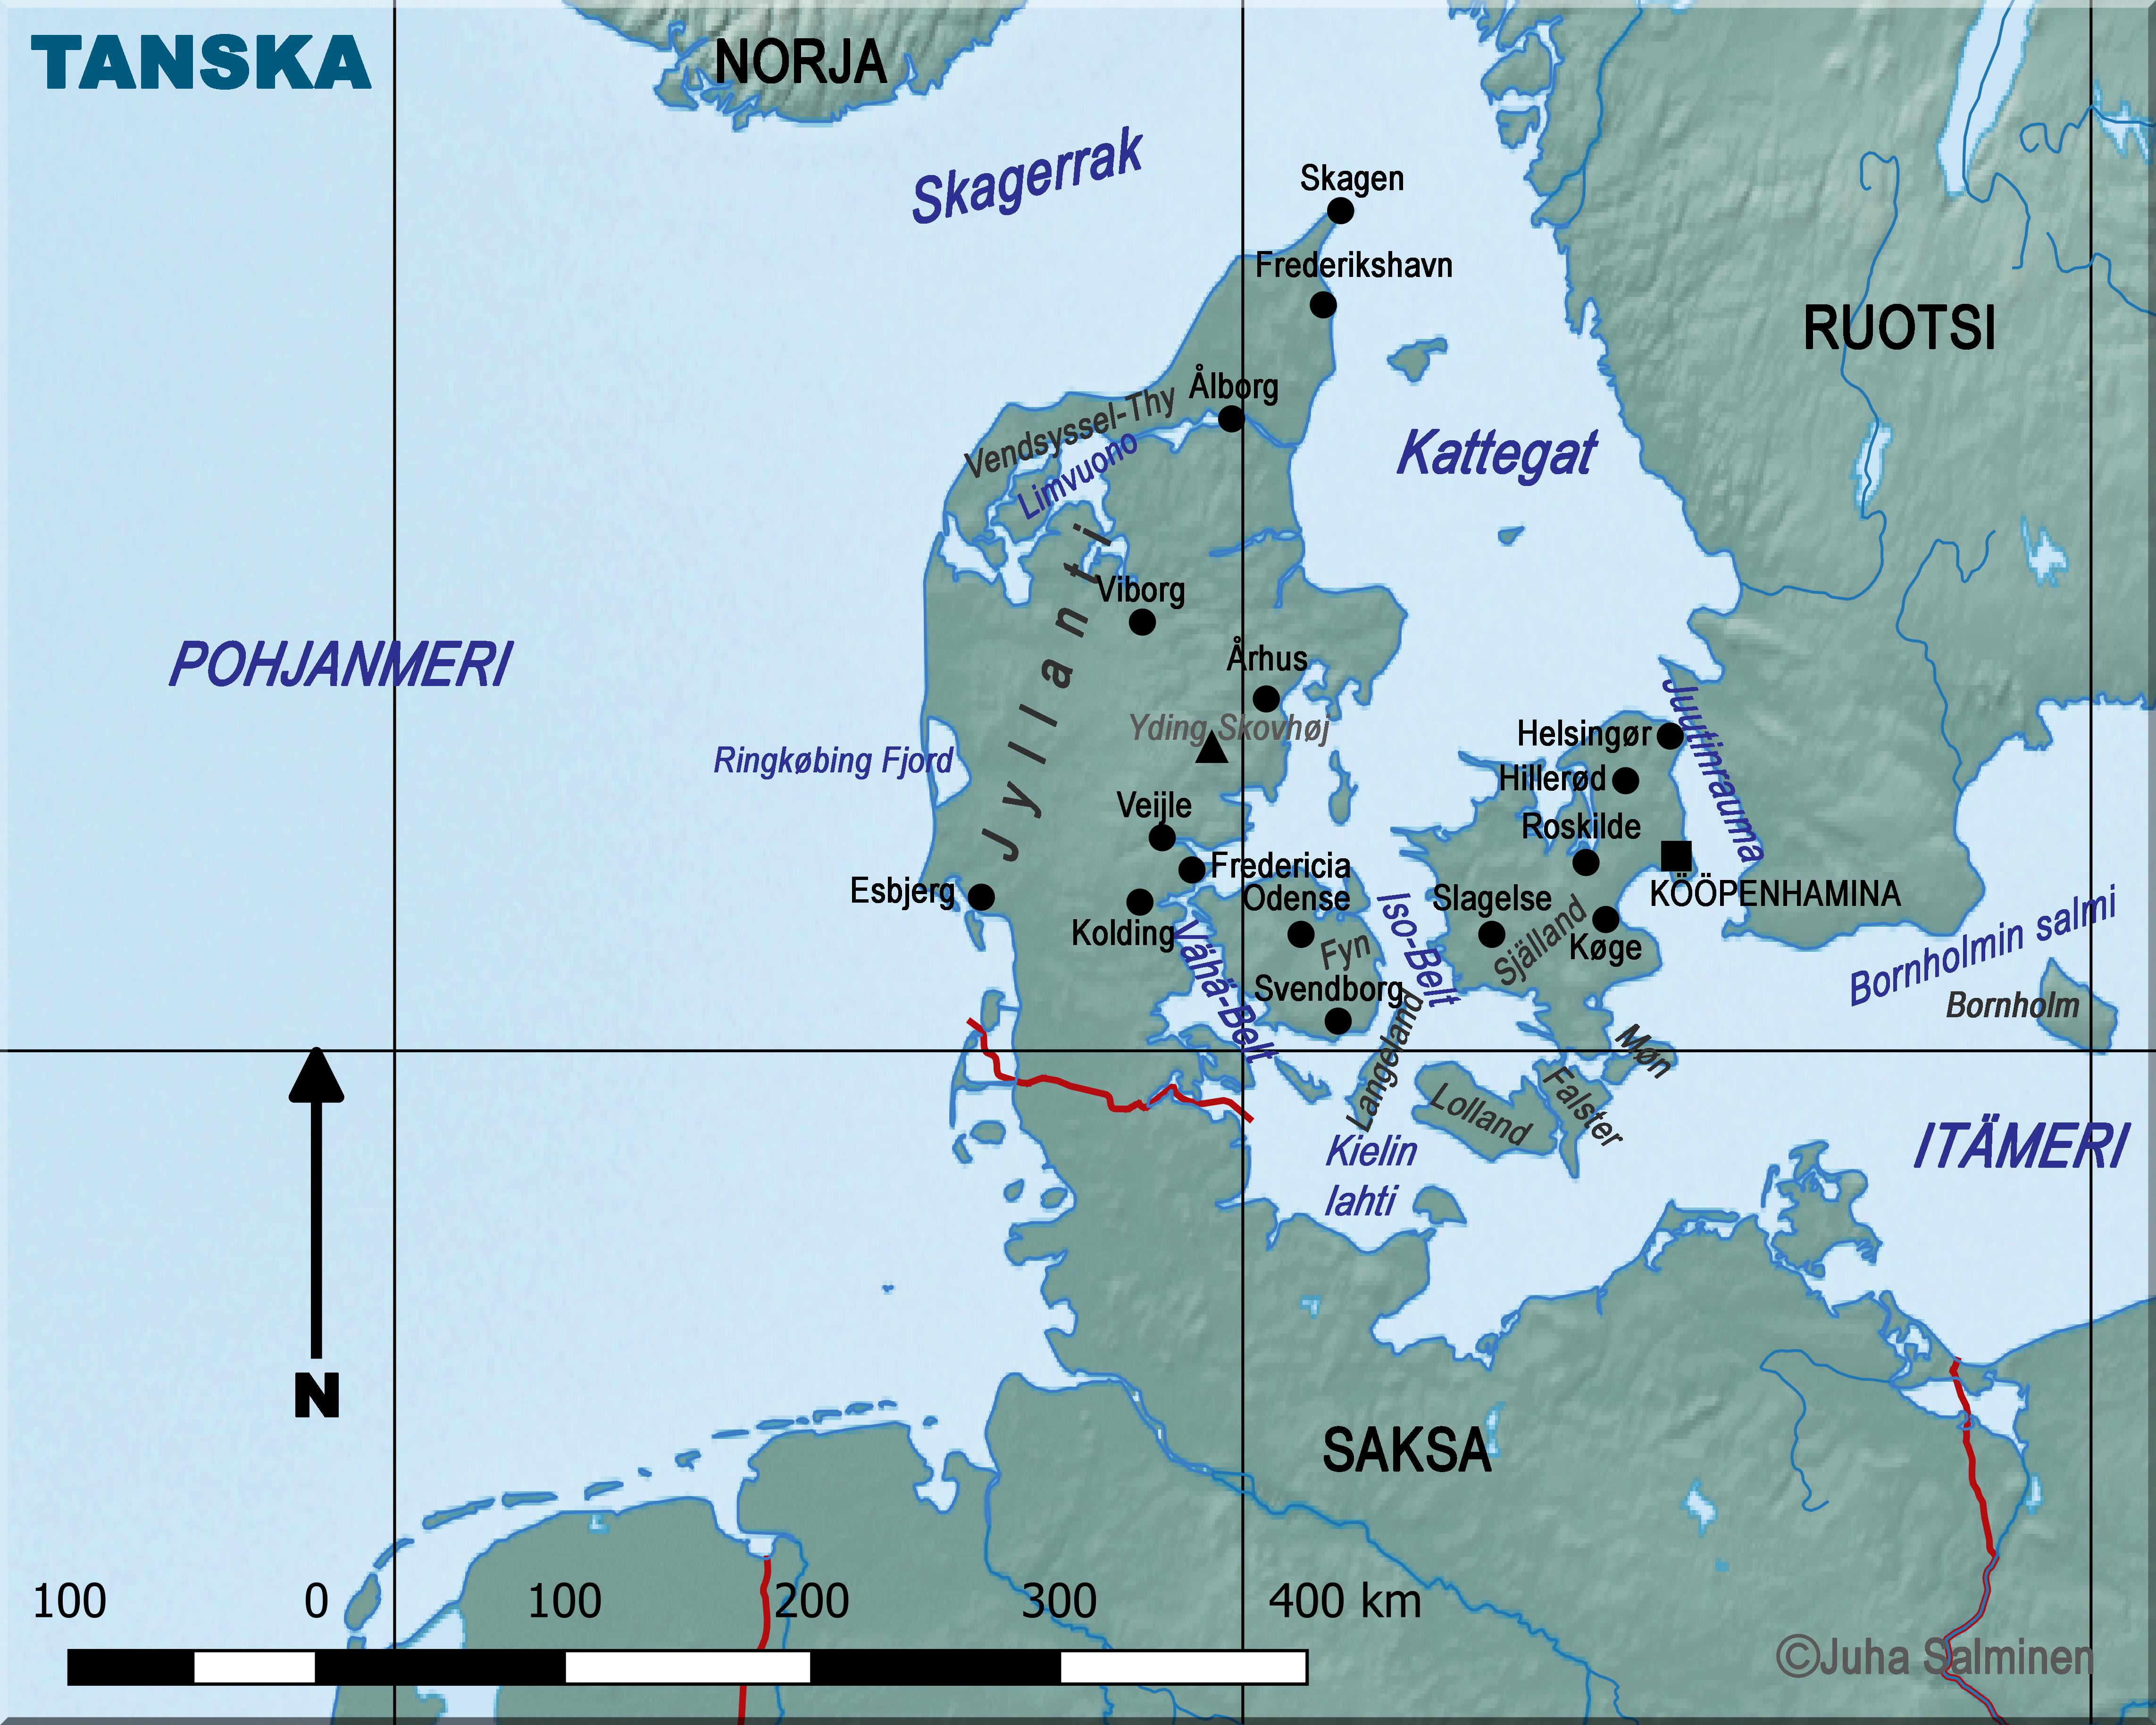 tanska kartta Tanskan Kartta tanska kartta